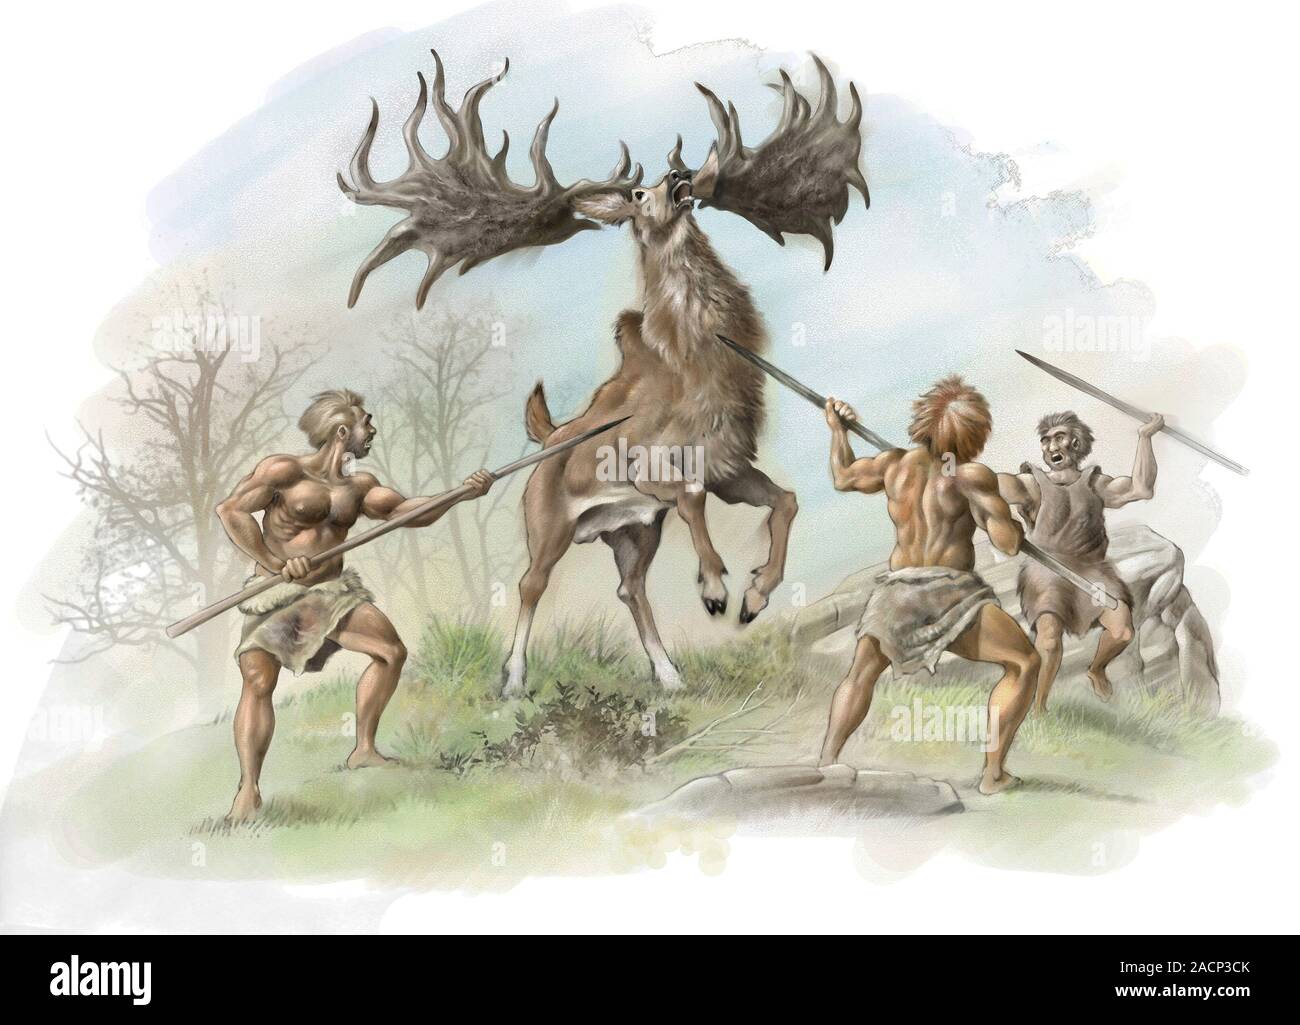 Первобытный человек отражал в рисунках важнейшие события. Охота на оленей загонная древних людей. Древняя охота. Охота первобытных людей. Первобытный охотник.